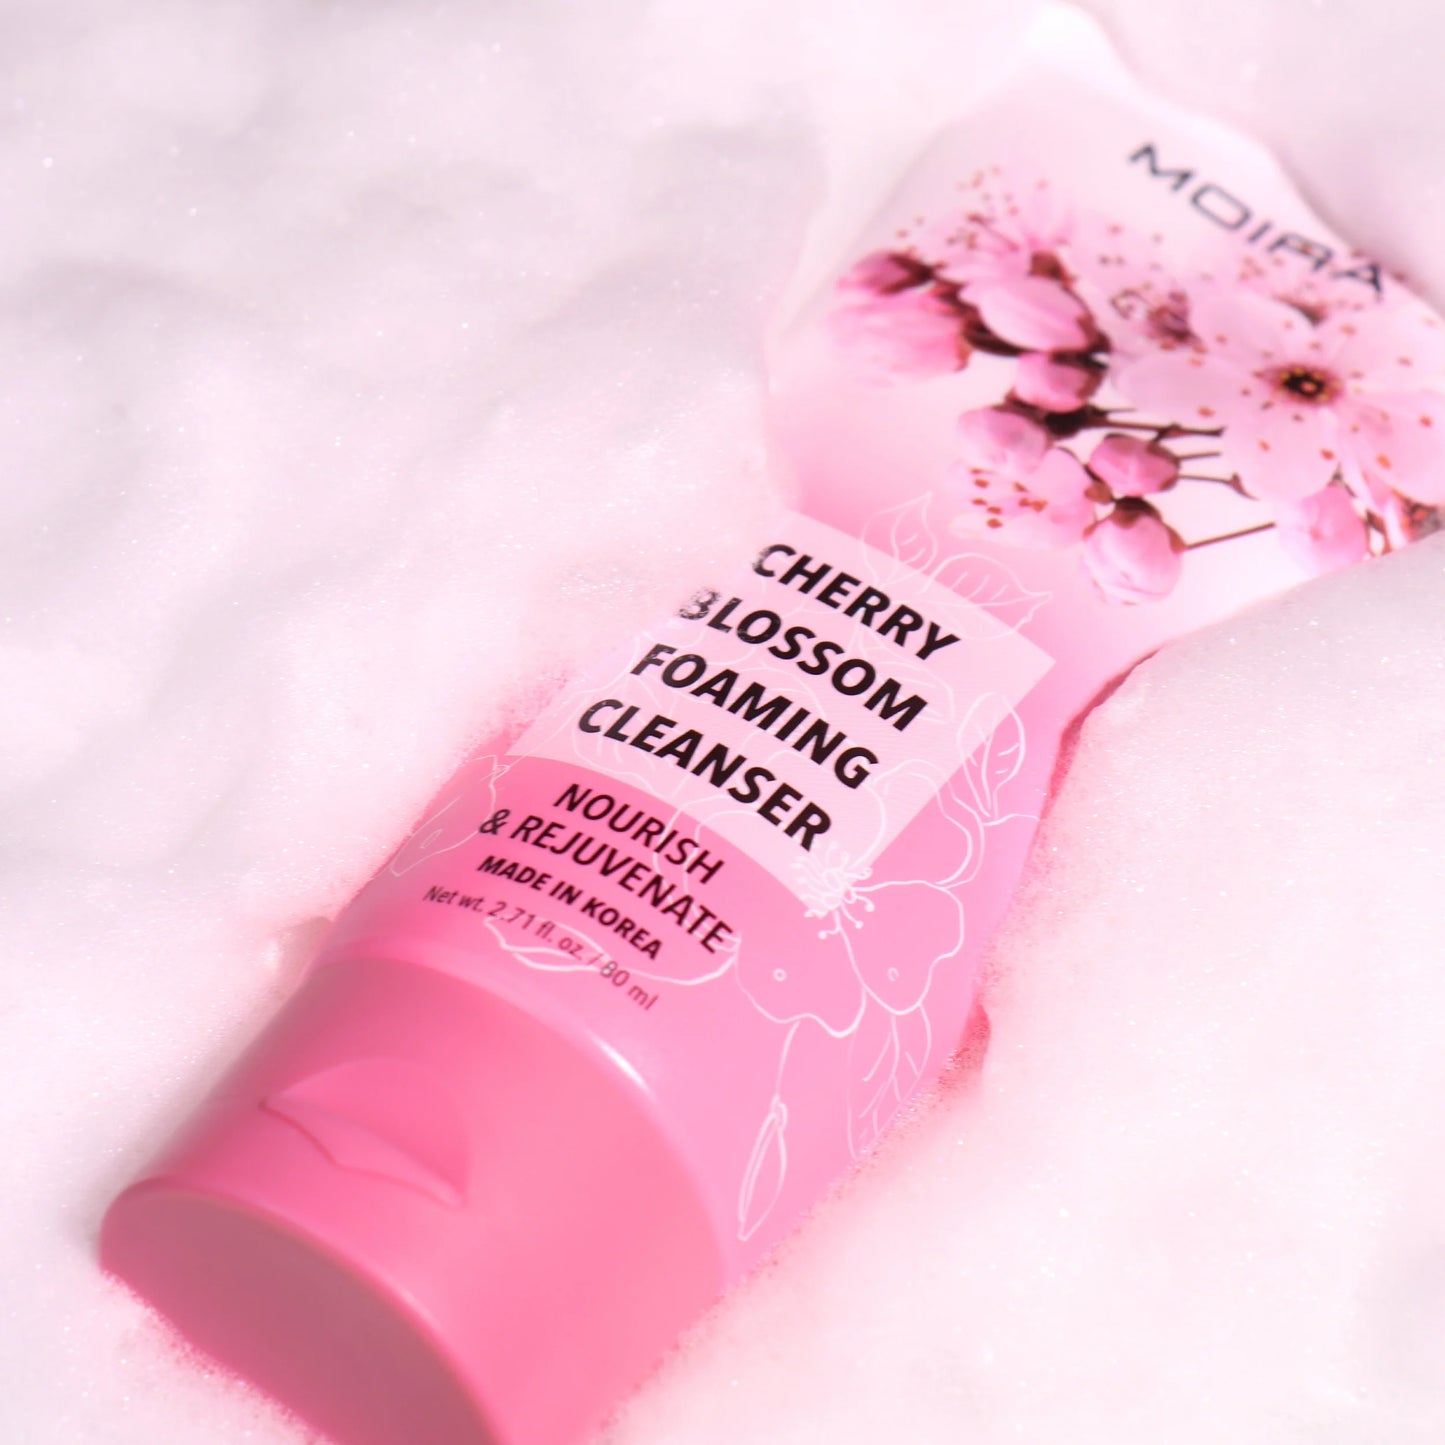 Limpiador Facial Cherry Blossom Foaming Cleanser - Moira